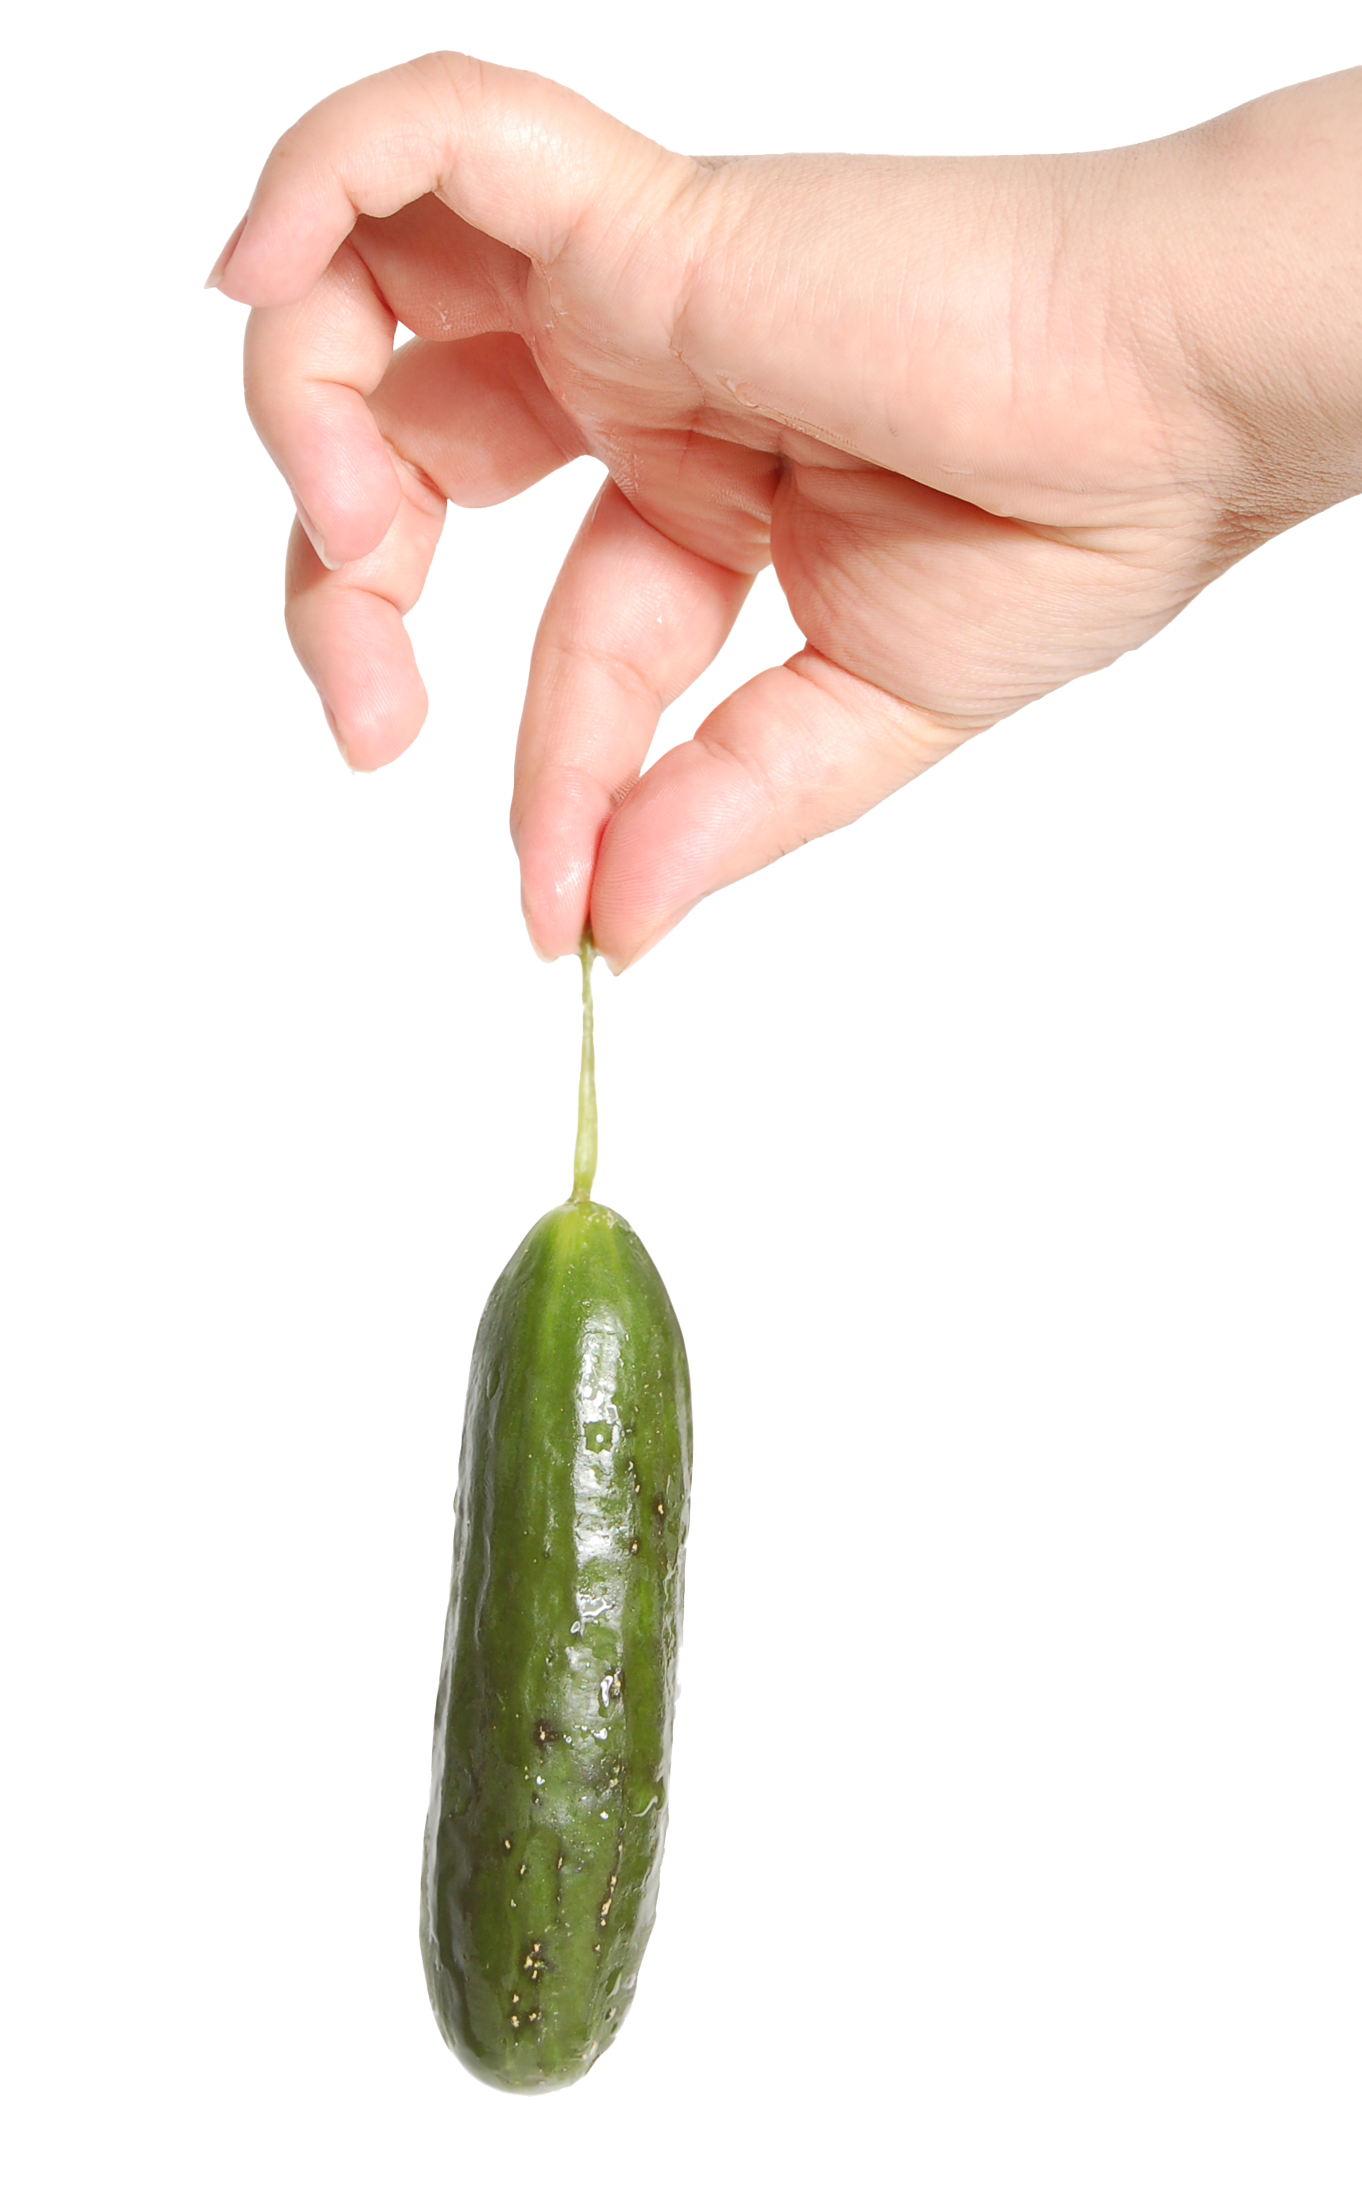 Cucumber in Hand